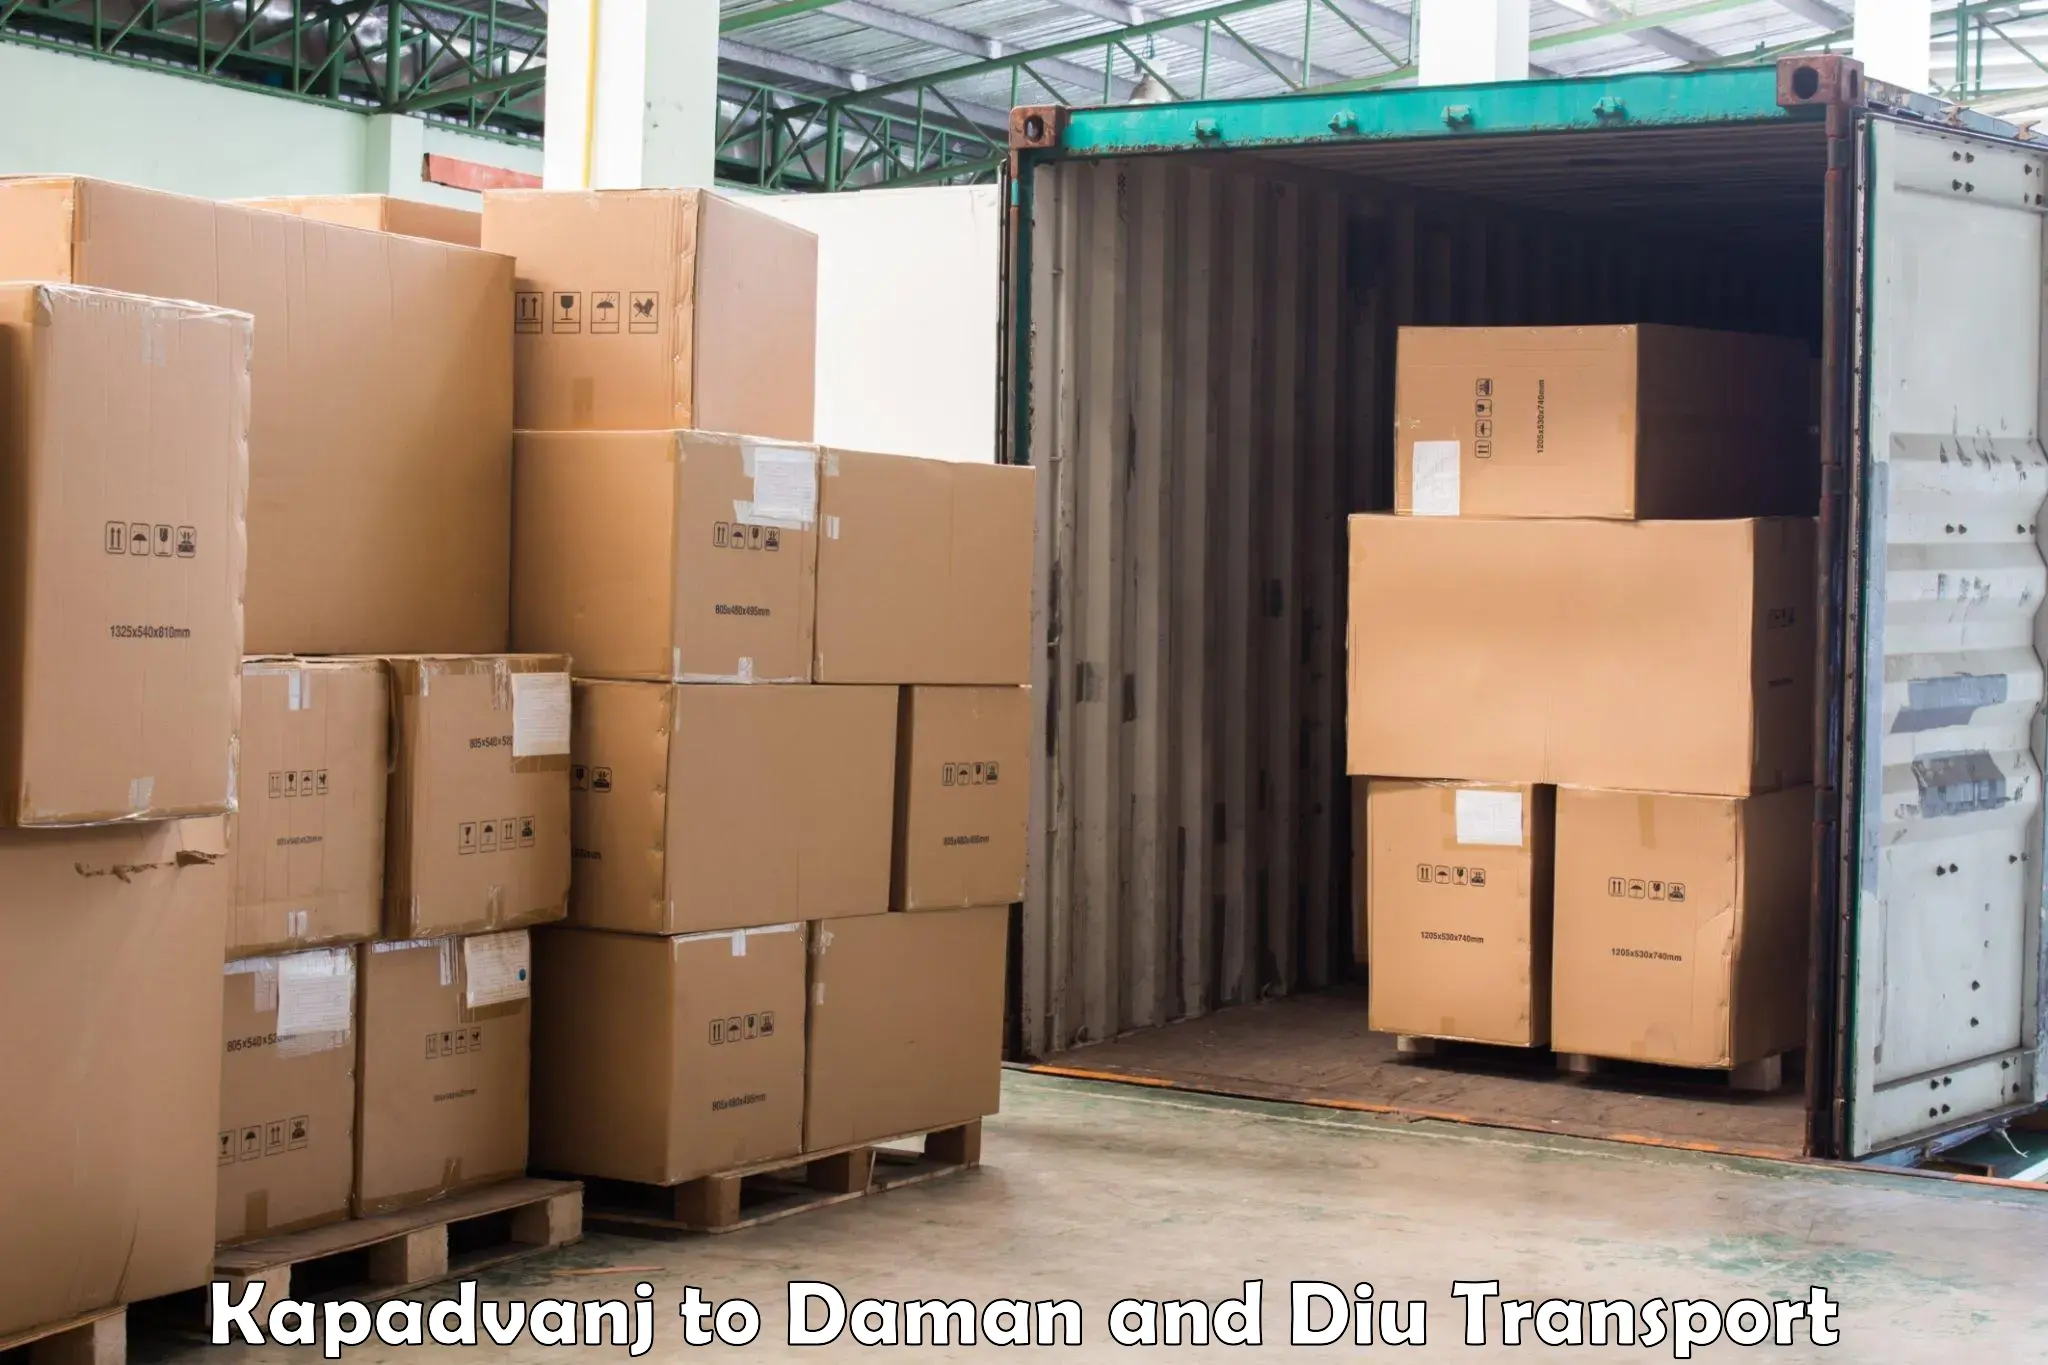 Daily parcel service transport Kapadvanj to Daman